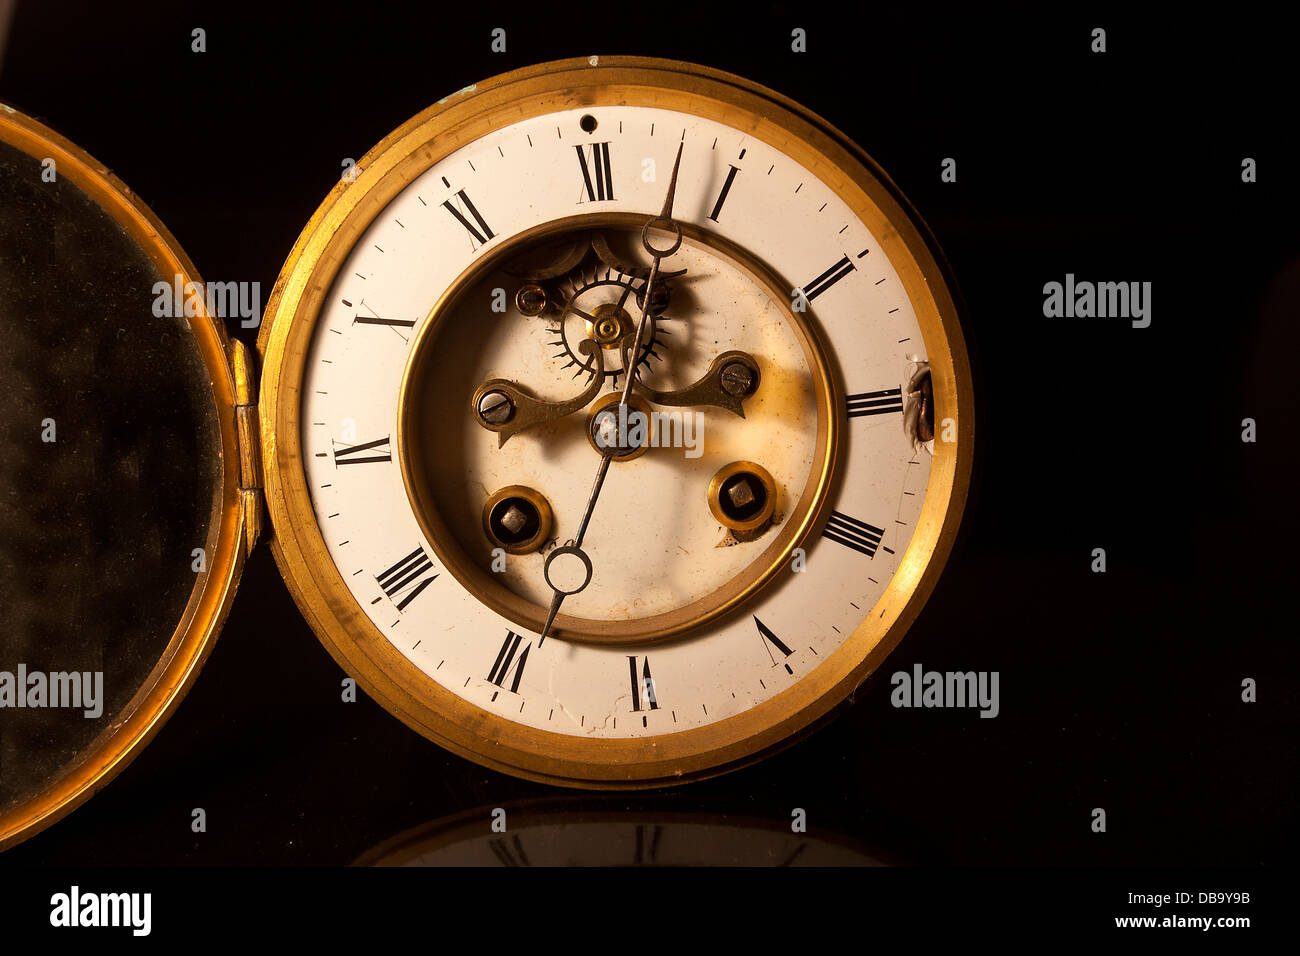 zeigt das Gesicht und Zifferblatt von einer alten britischen antiken viktorianischen Uhr Stockfoto